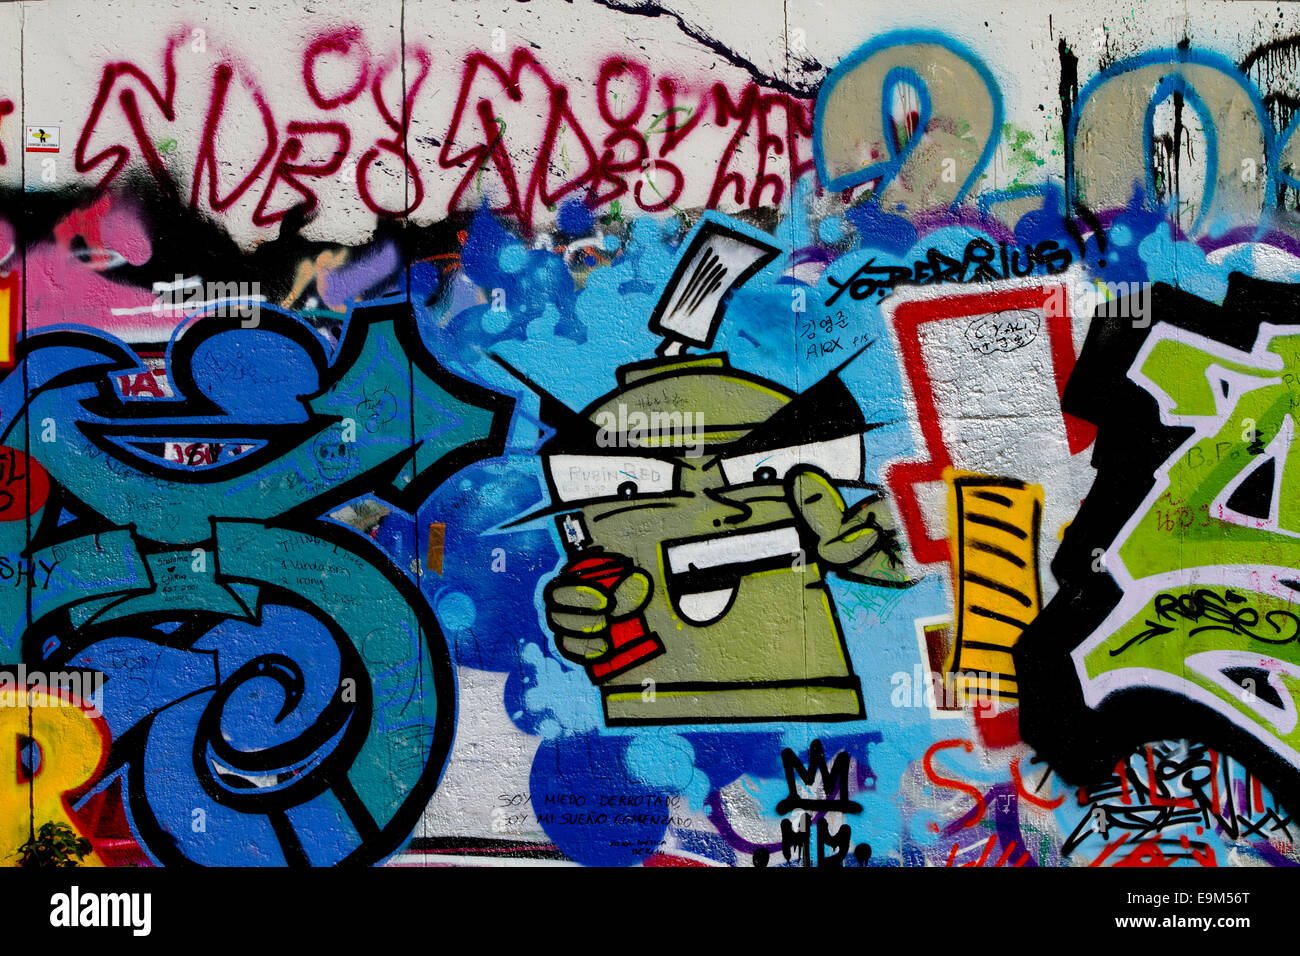 Graffiti street art Berlin Wall cartoon characters Stock Photo